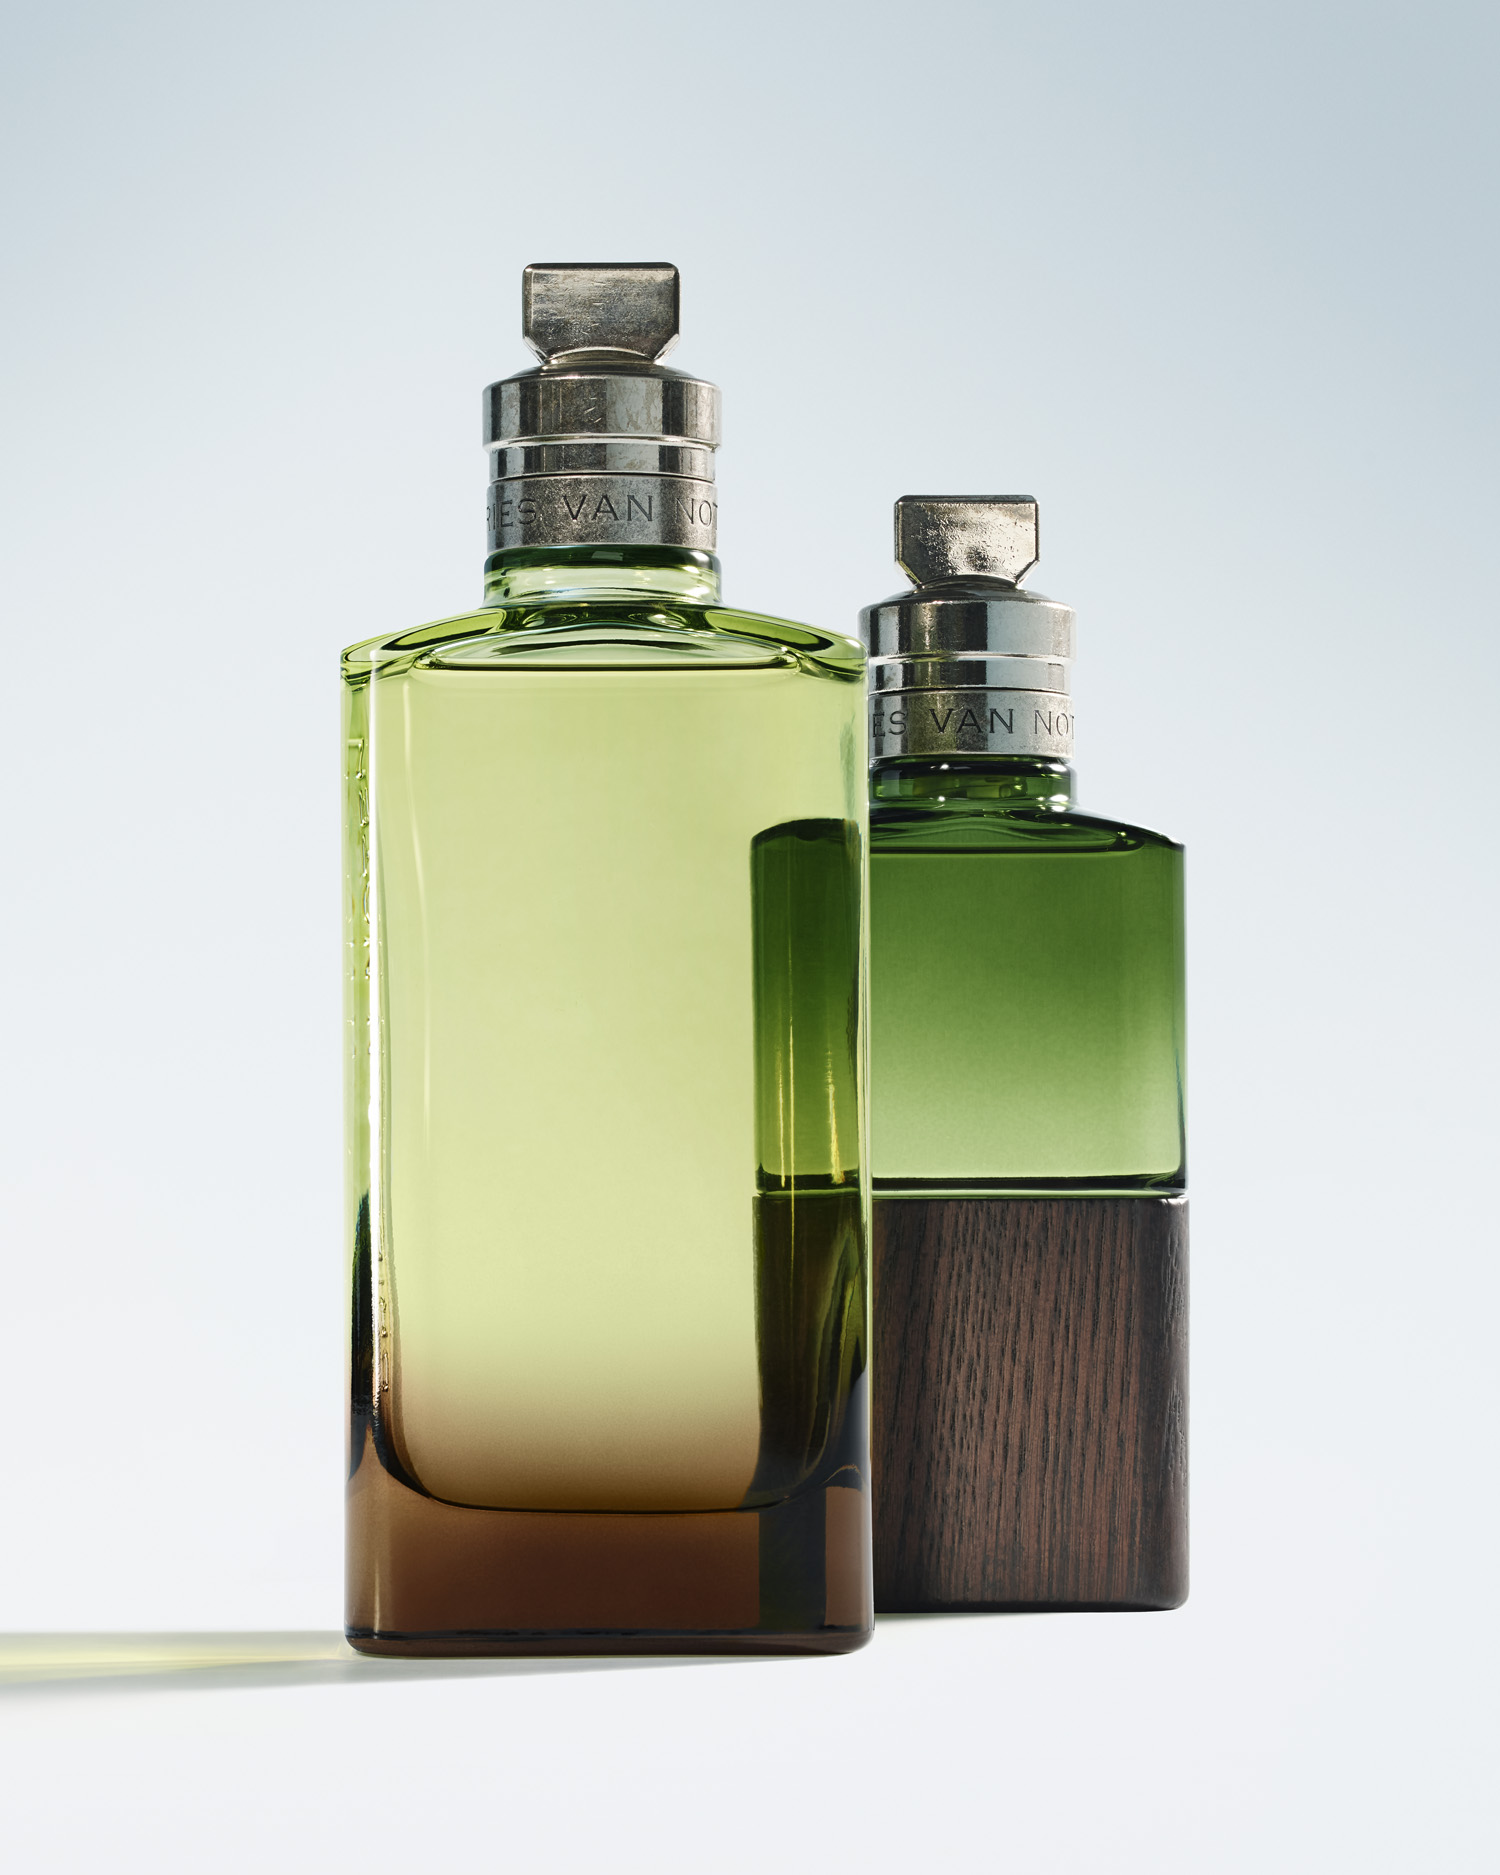 Dries Van Noten Mystic Moss perfume bottles